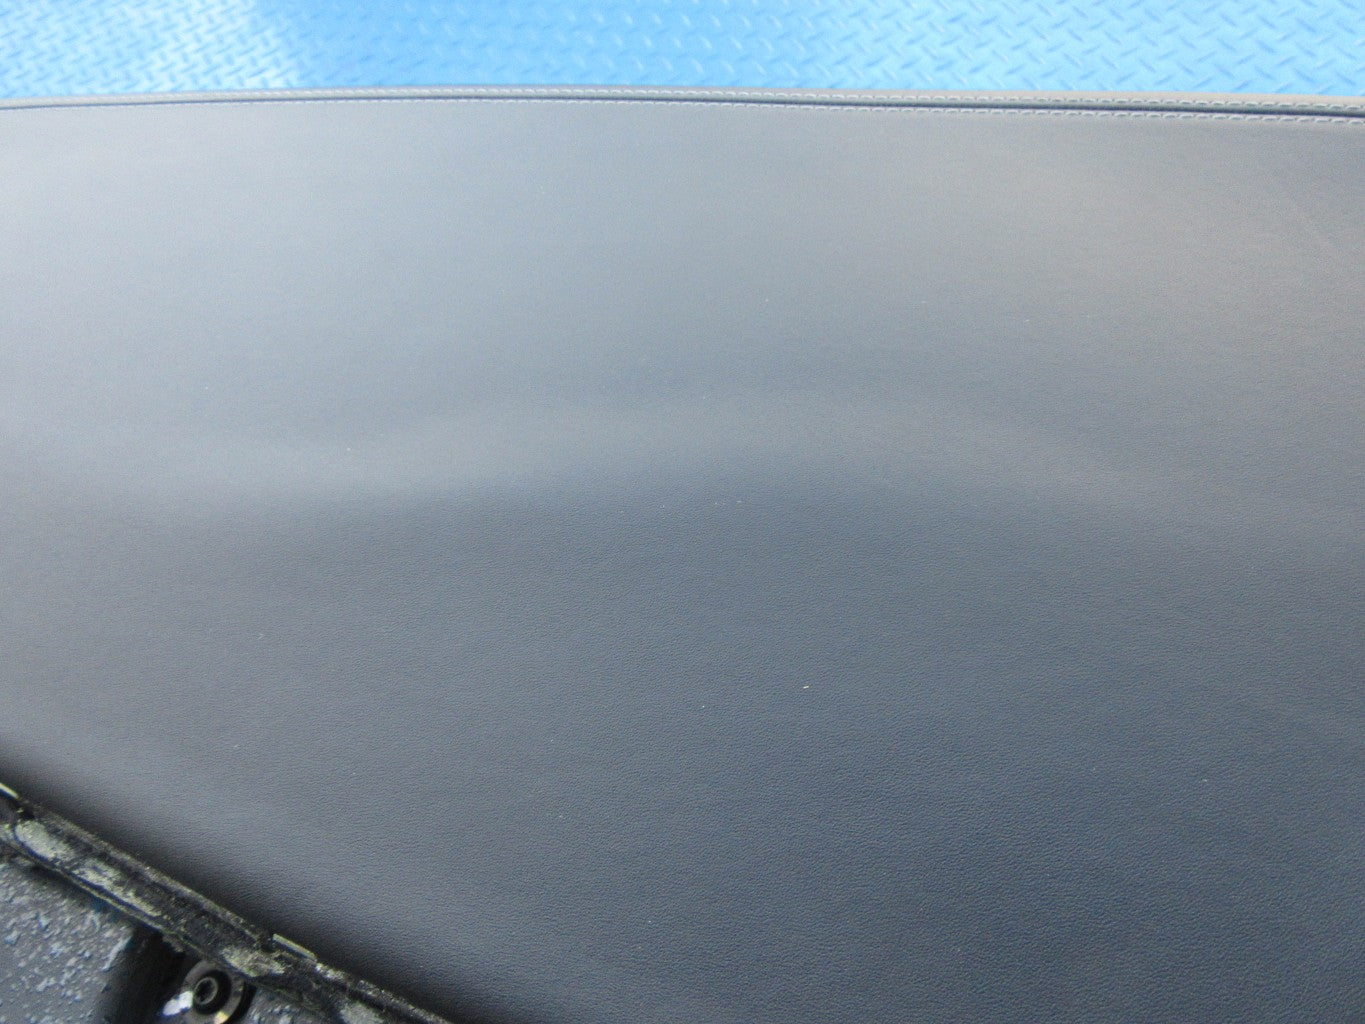 Maserati Quattroporte dashboard black #1372